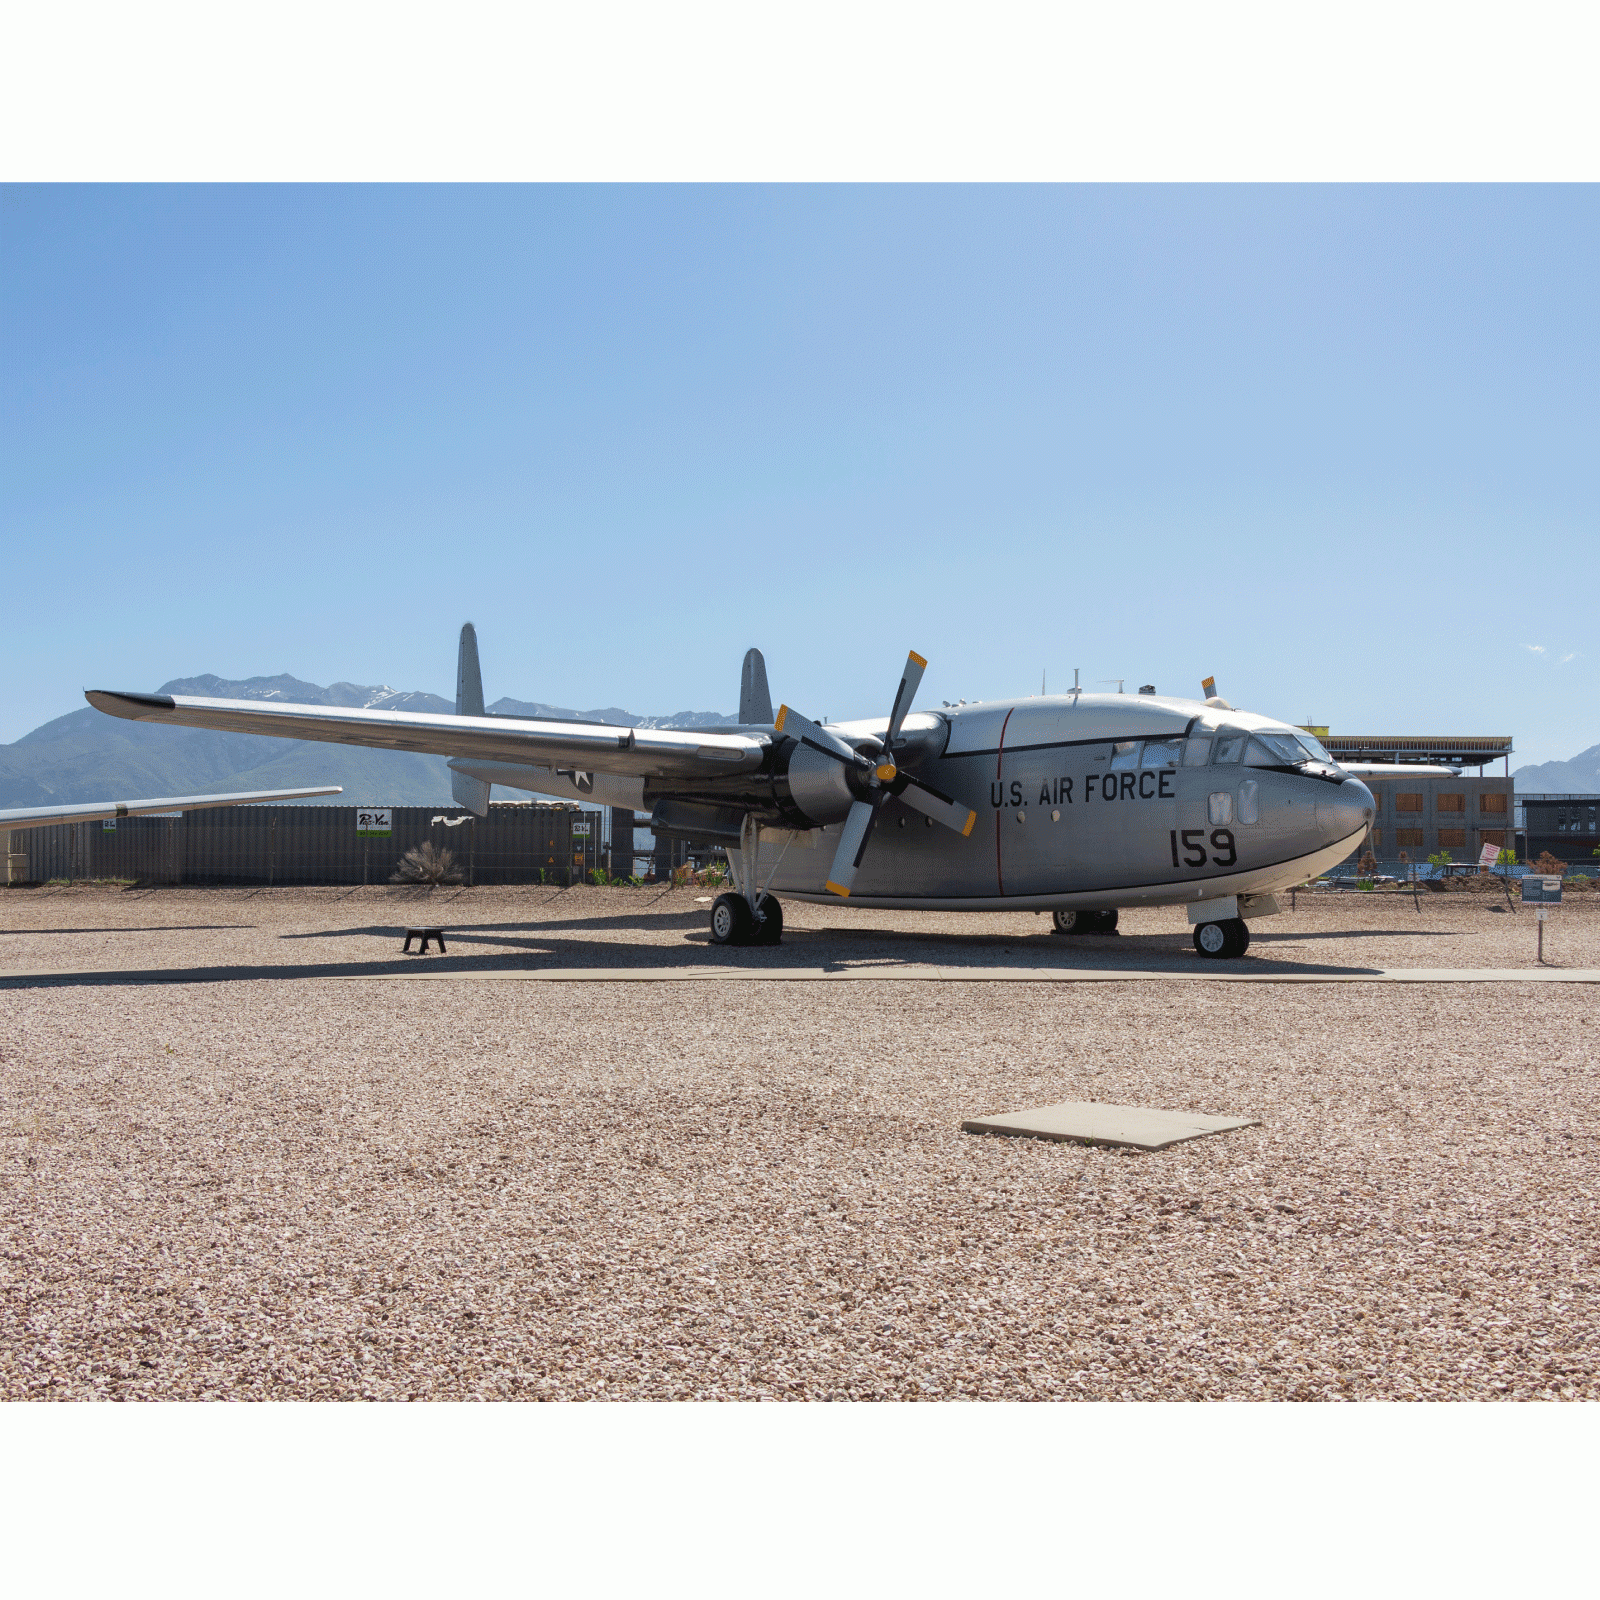 Fairchild C-119C – ivanpotapoff / Shutterstock